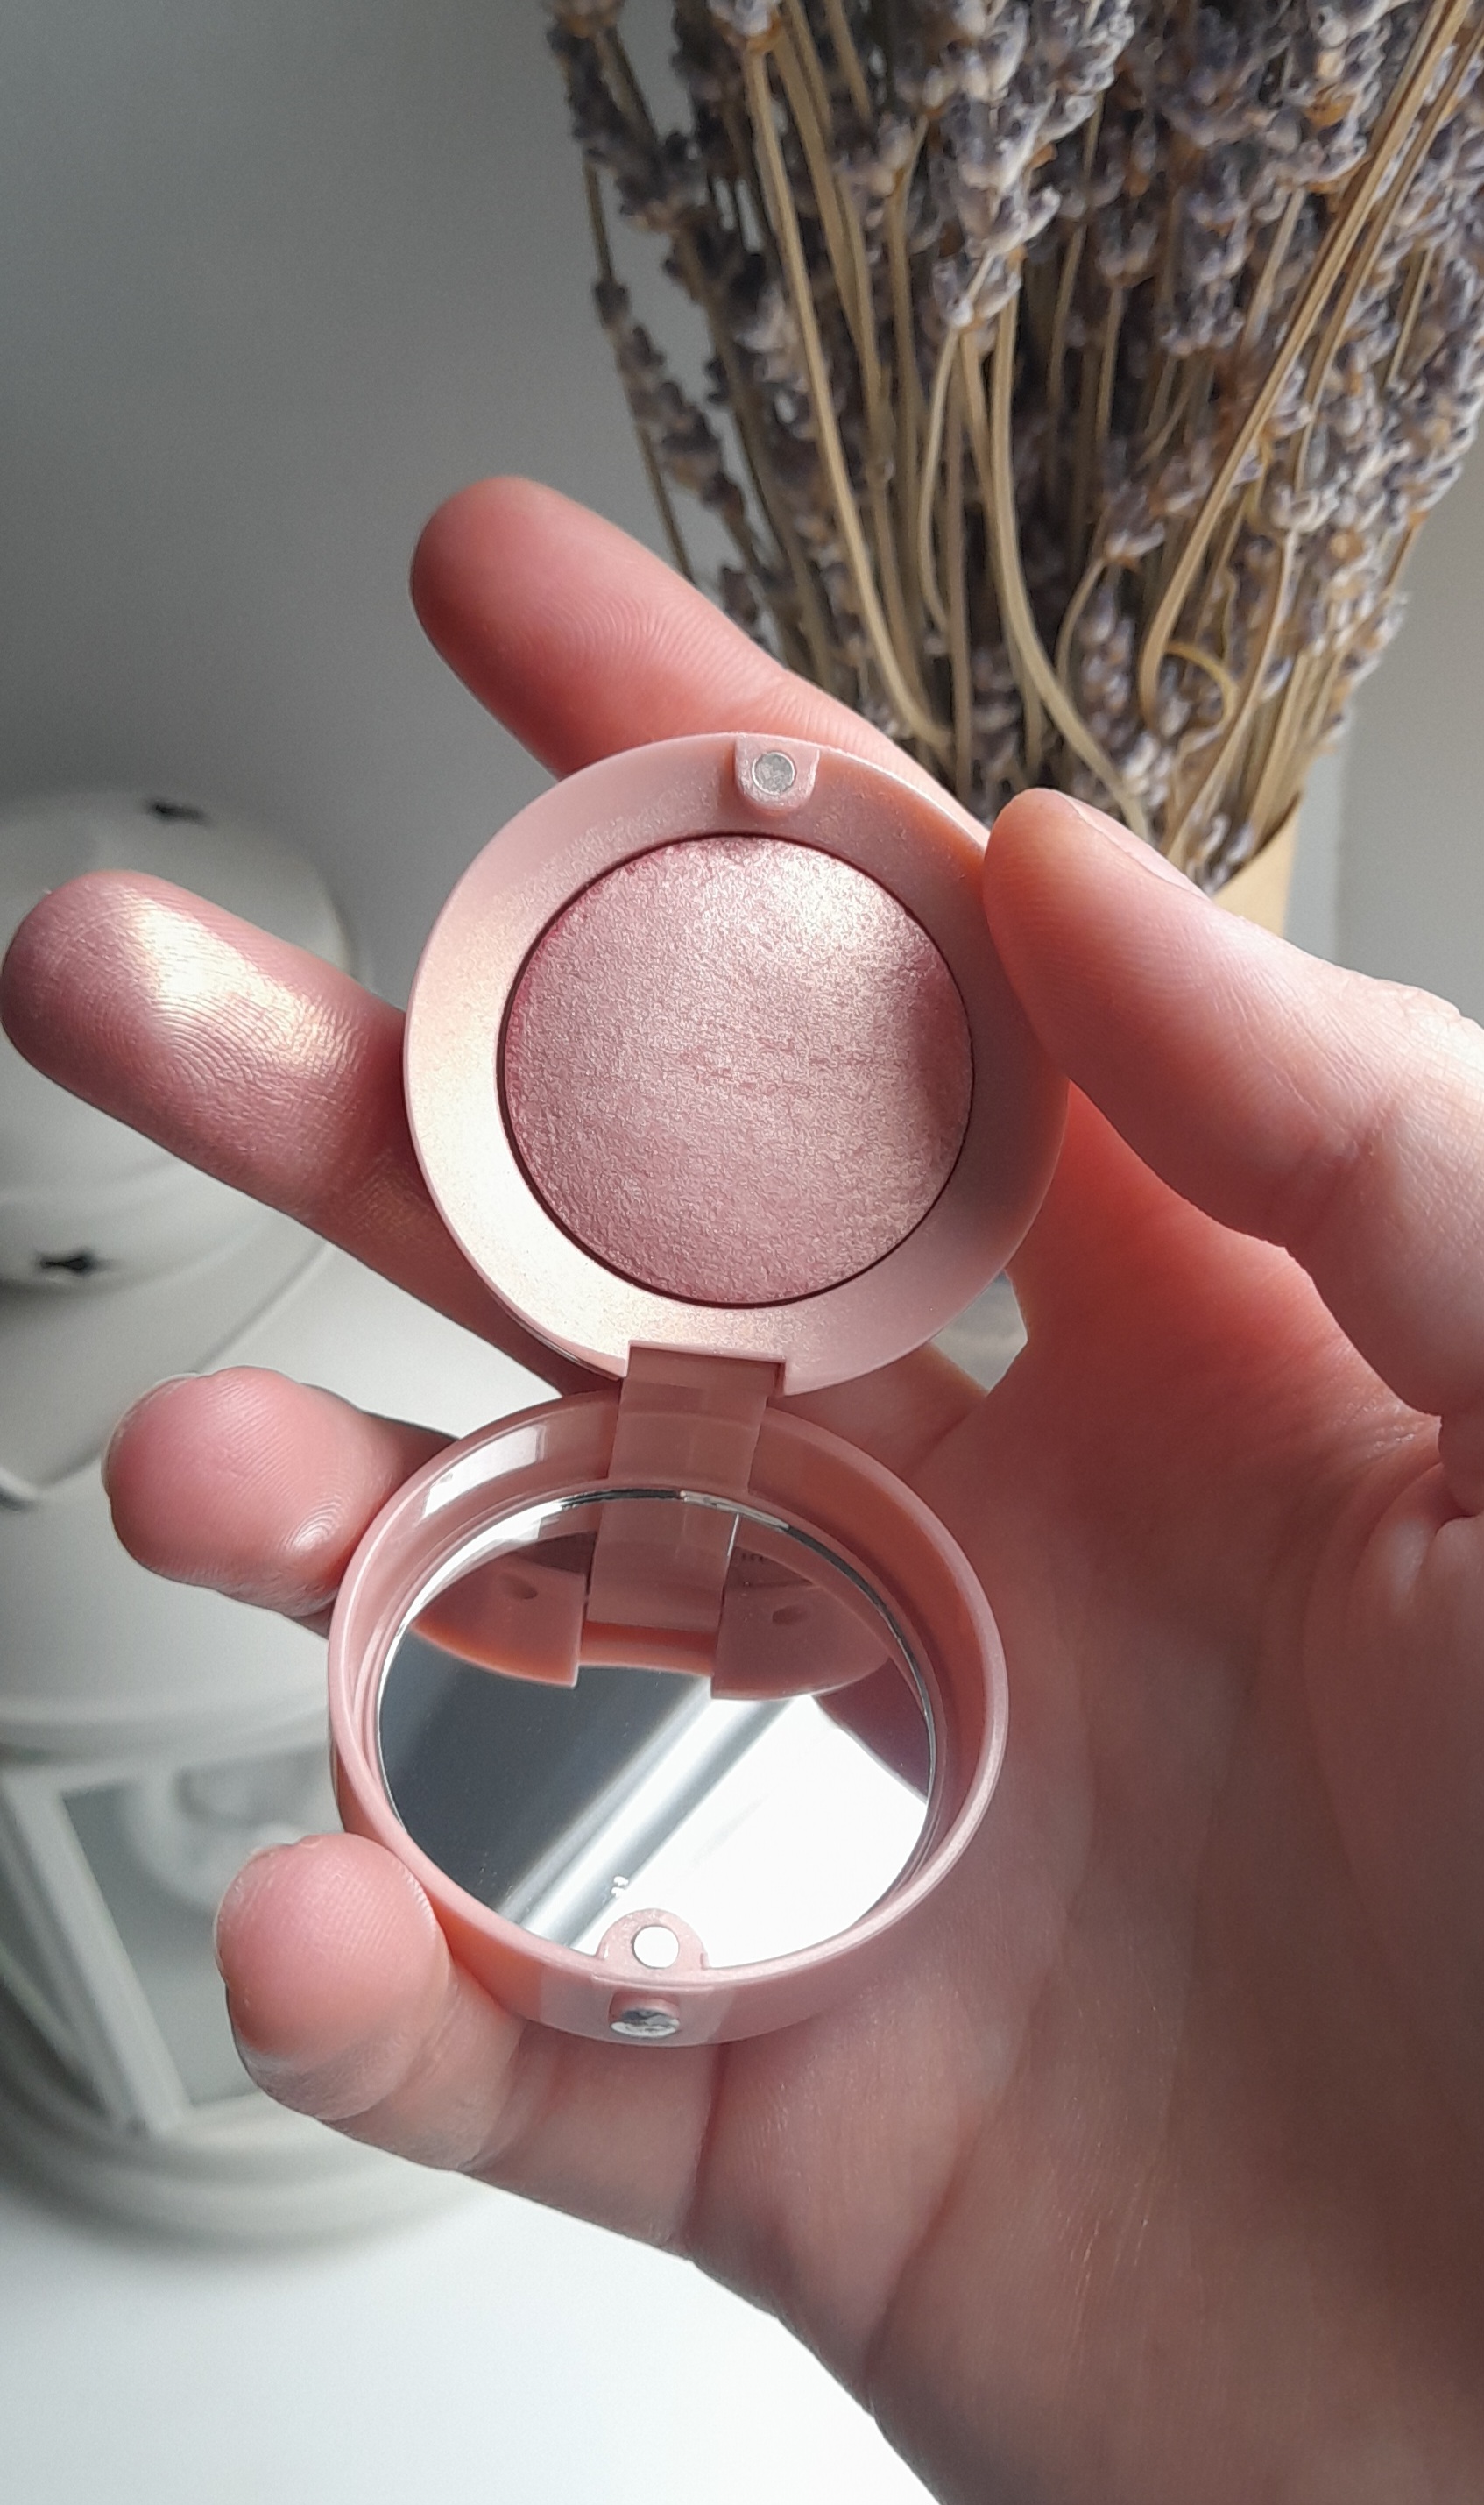 Bourjois Little Round Pot Individual Eyeshadow 11 Pink Parfait